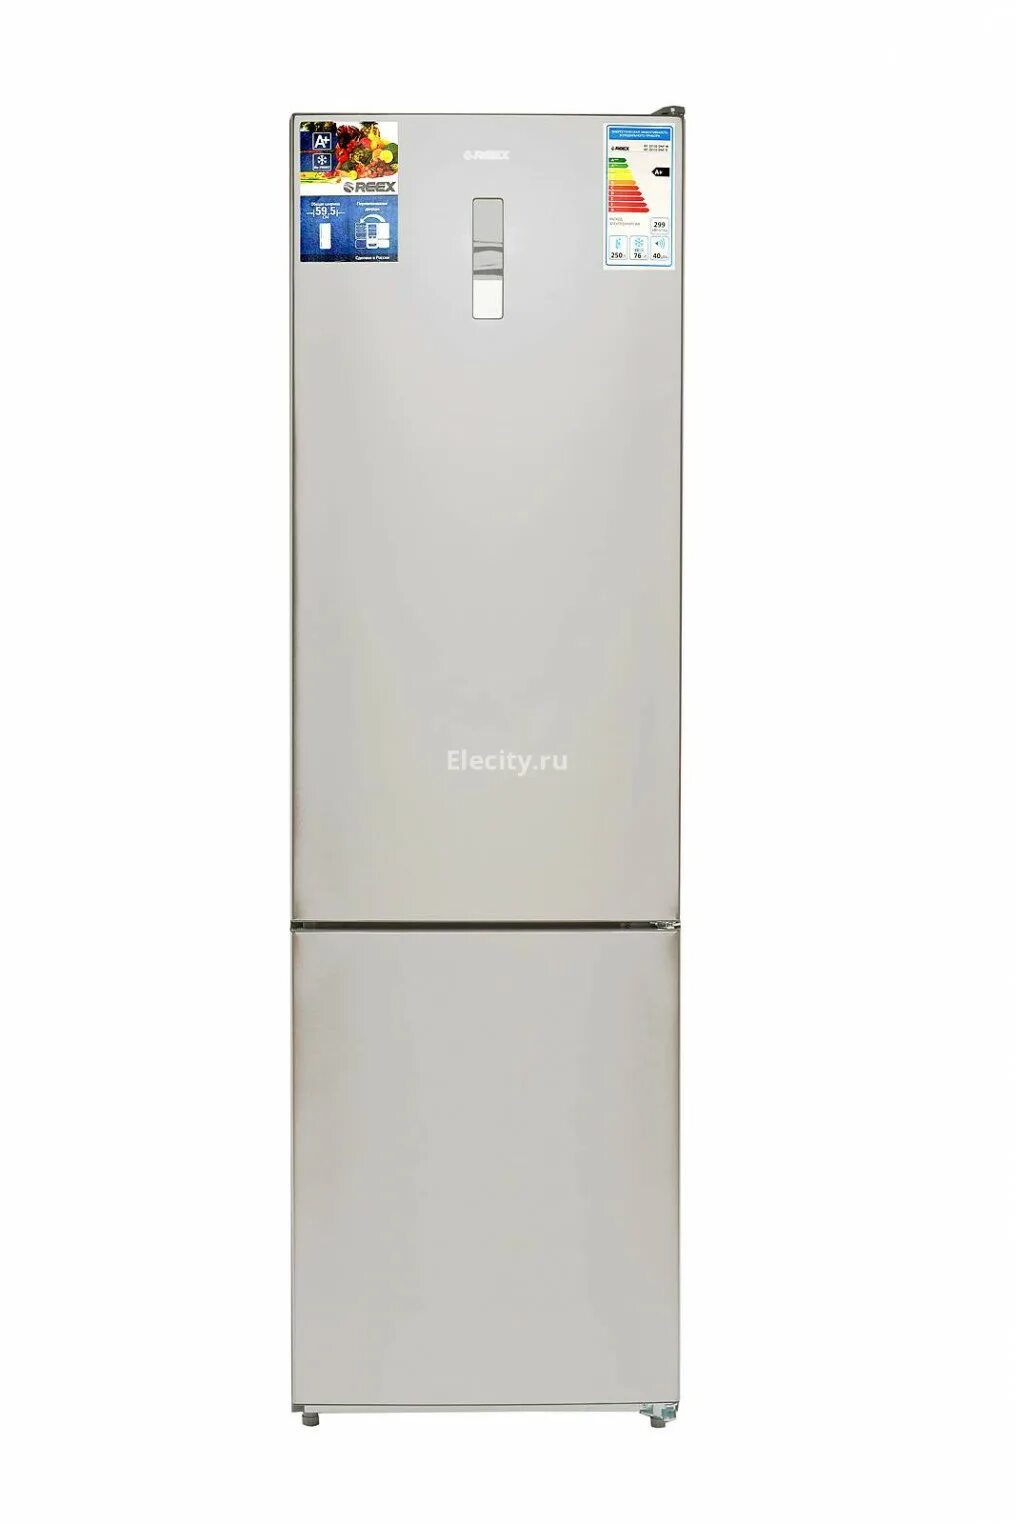 Новые модели холодильников. REEX холодильники. Candy холодильник 90см. Холодильник сони двухкамерный.